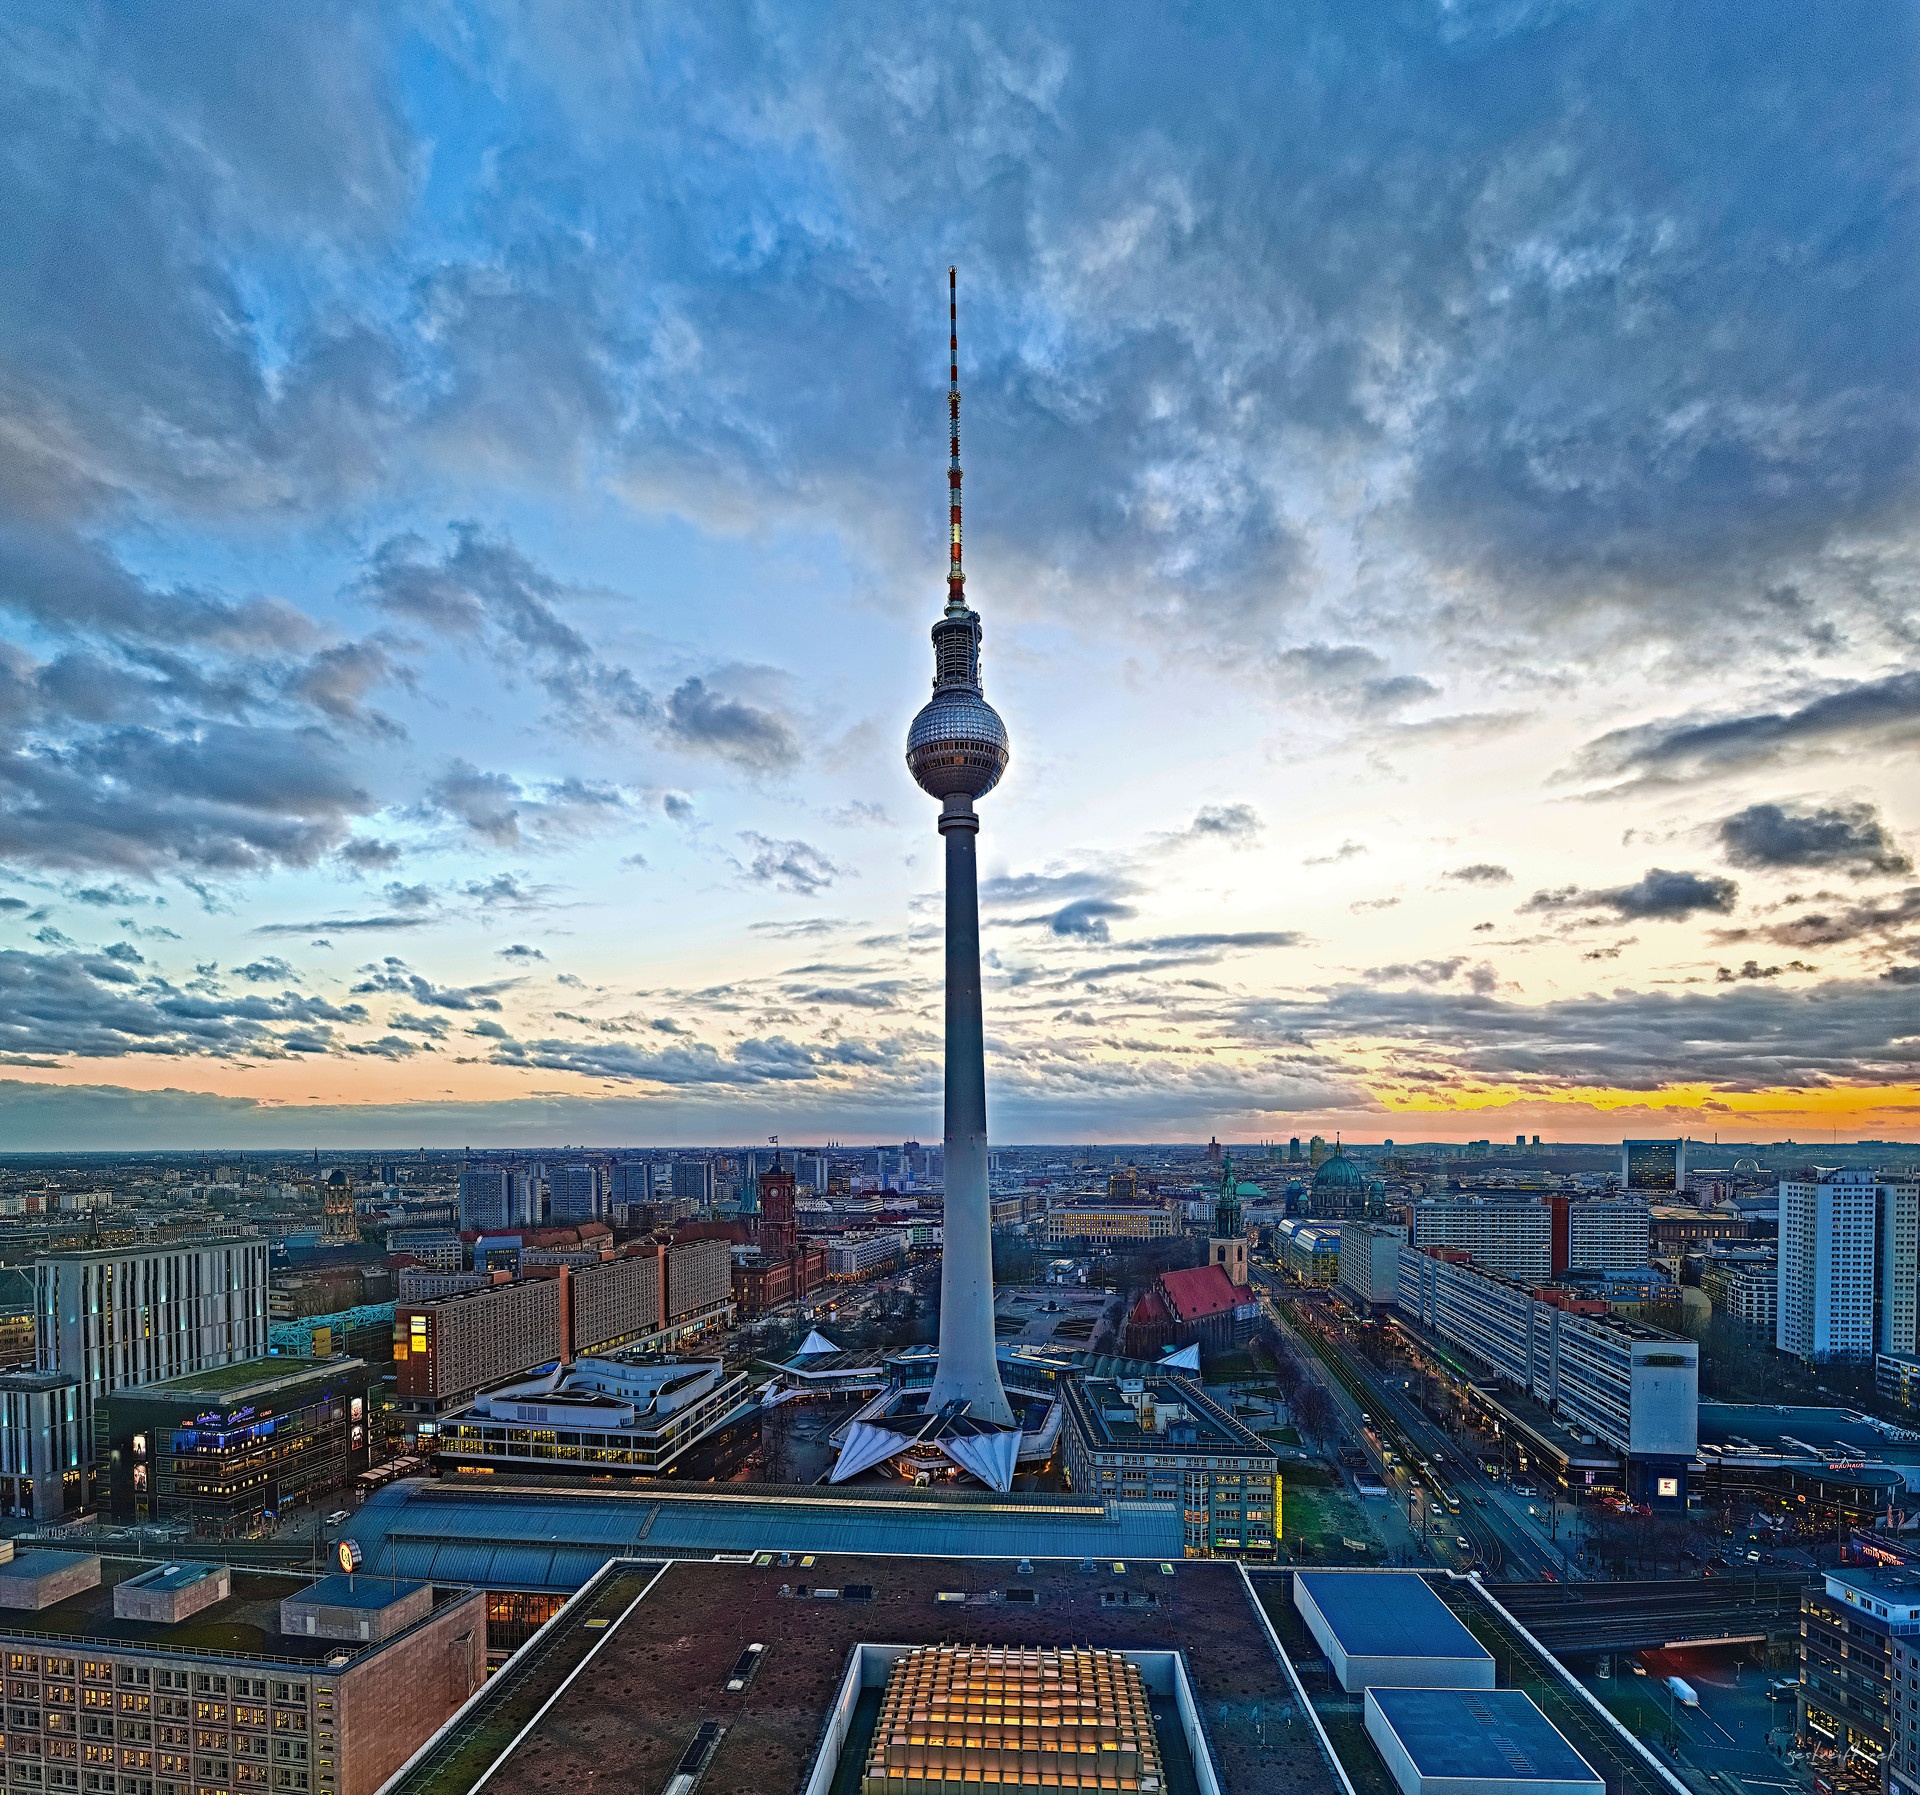 Der Fernsehturm Berlin - blog.gestreift.net (Photoblog)